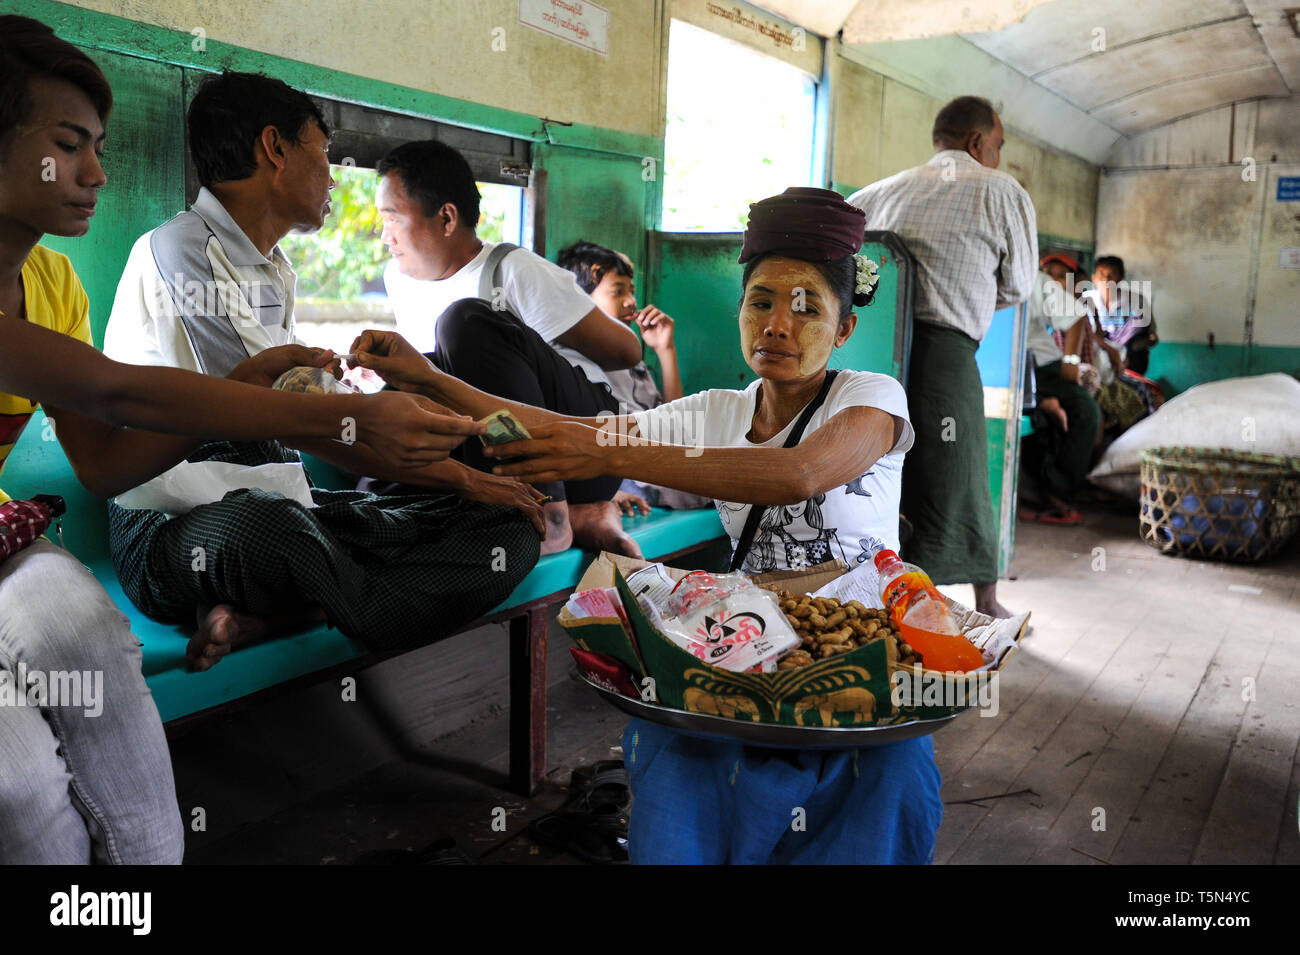 02.09.2013, Yangon, Republik der Union Myanmar, Asien - eine Frau verkauft Erdnüsse in einem Zugabteil auf der Circle Line. Stockfoto